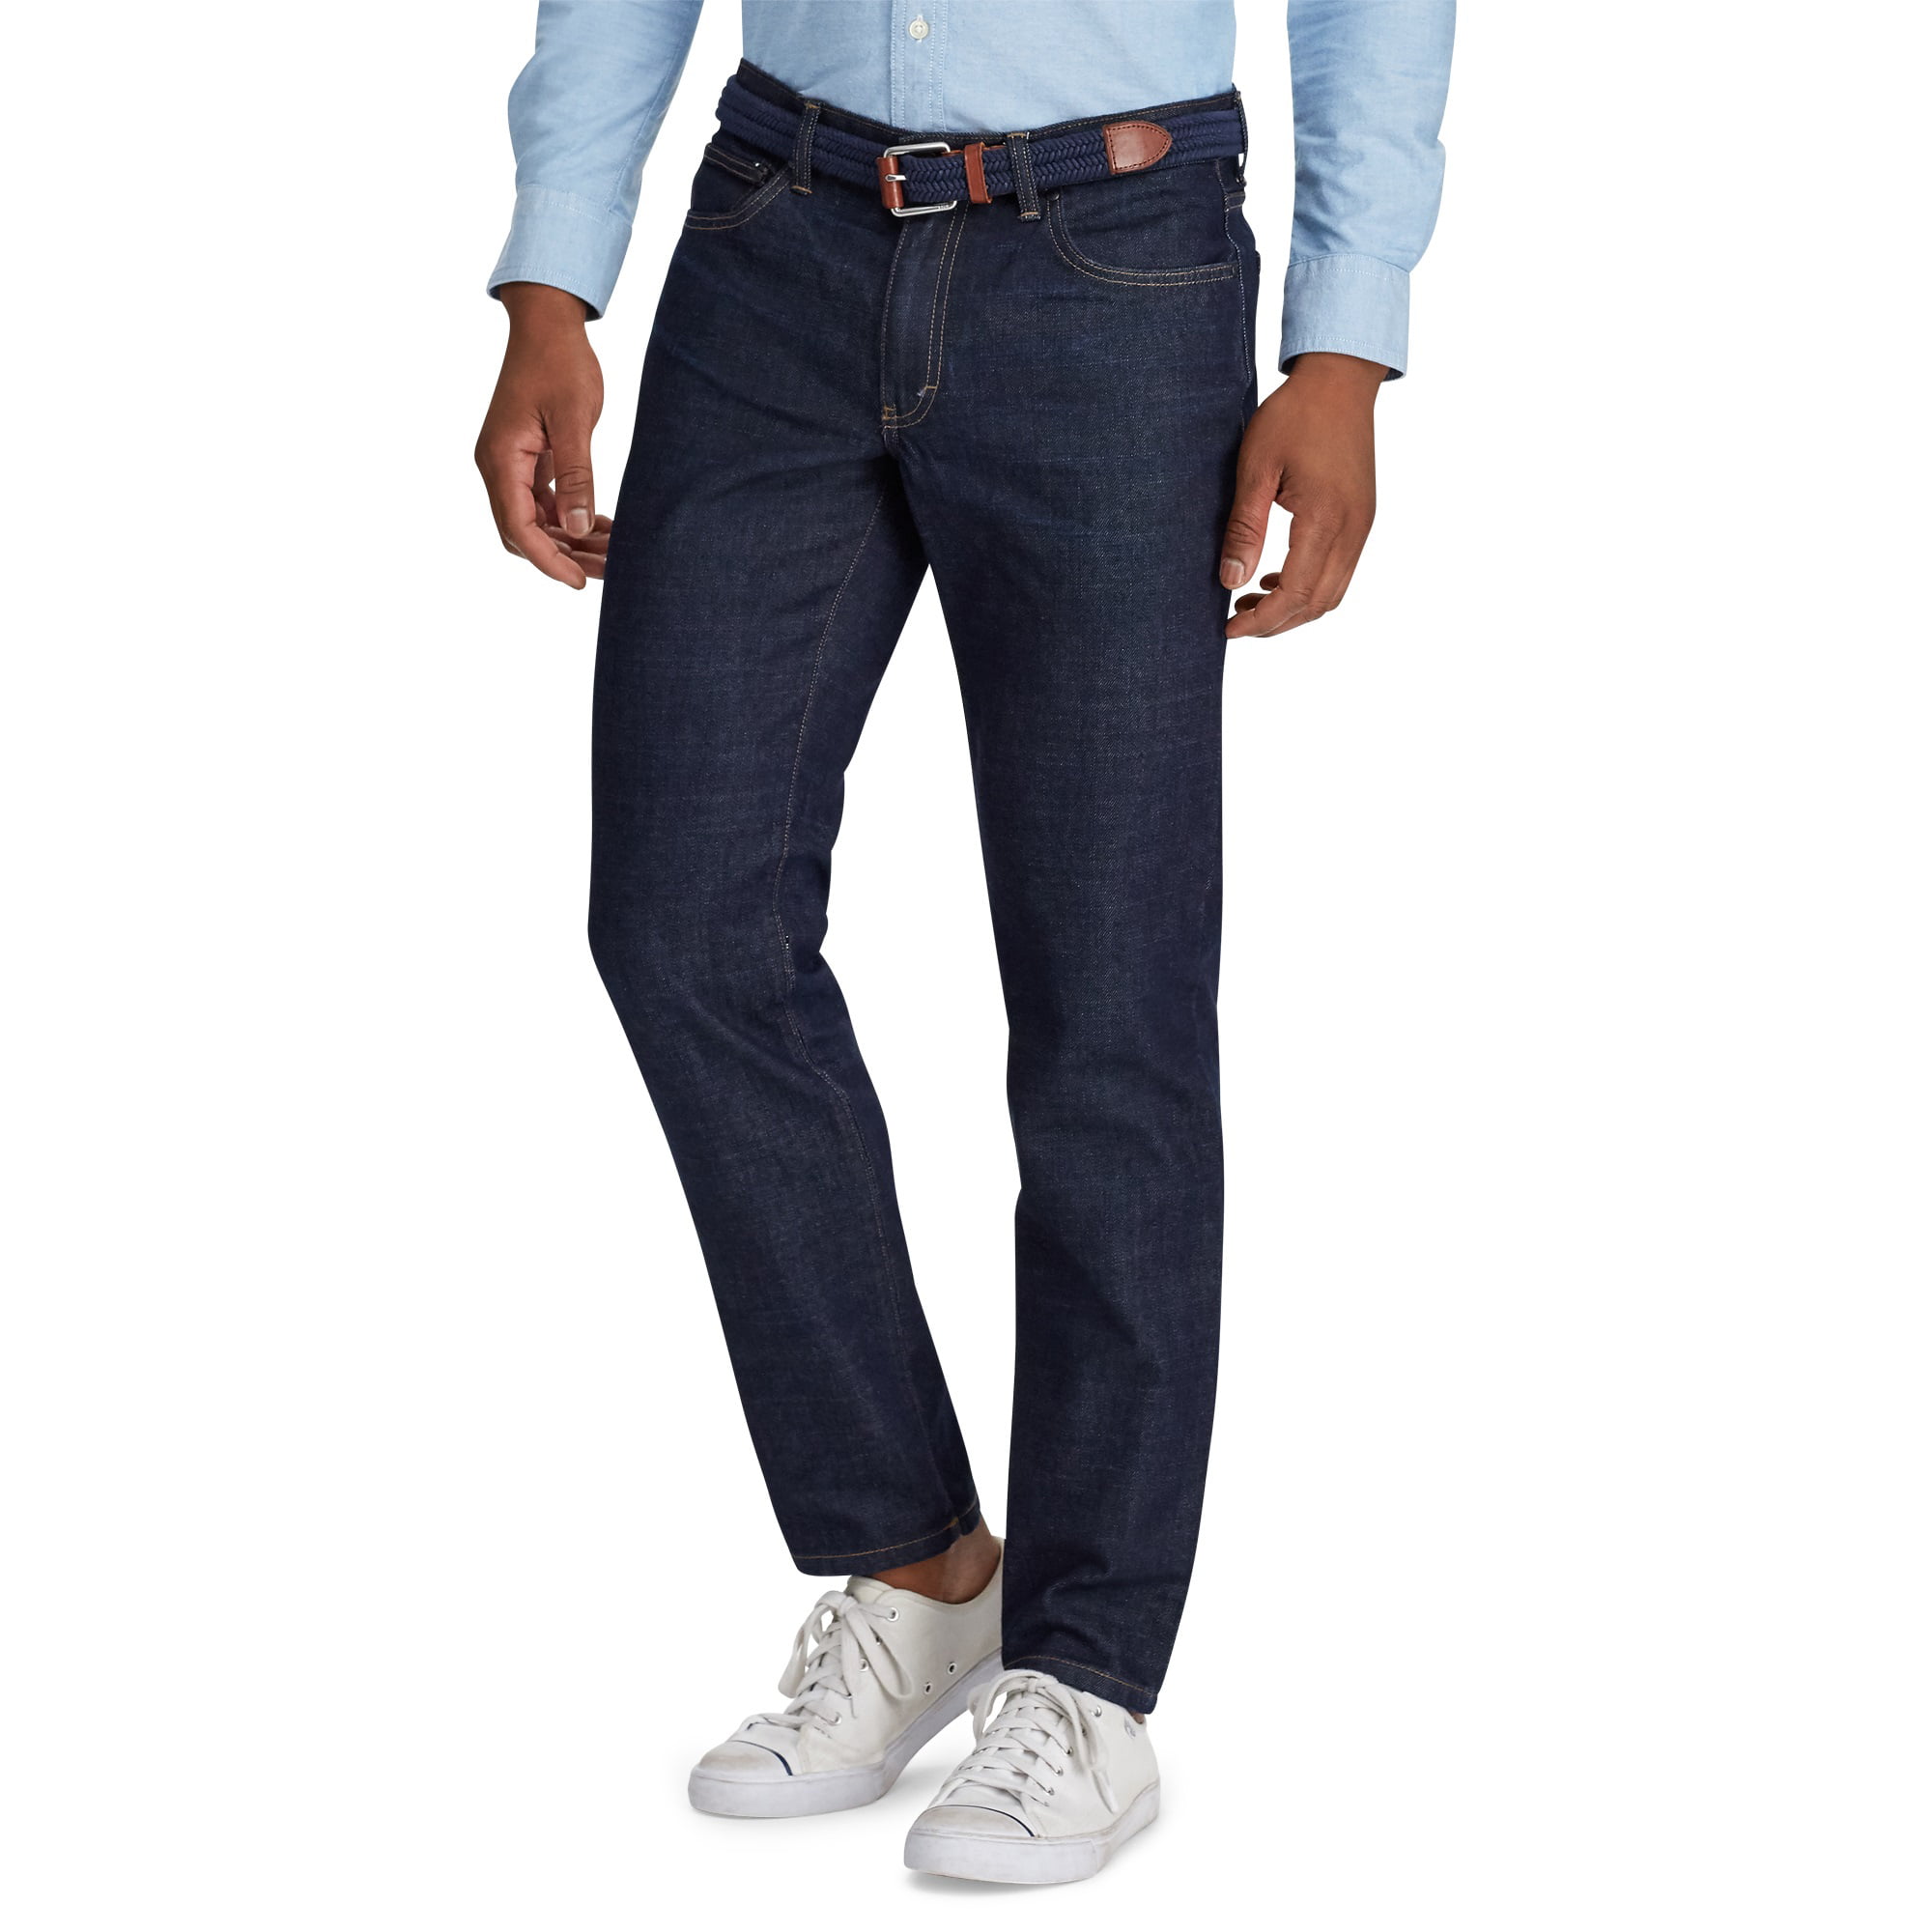 Chaps Men's Straight Fit Jeans Walmart.com